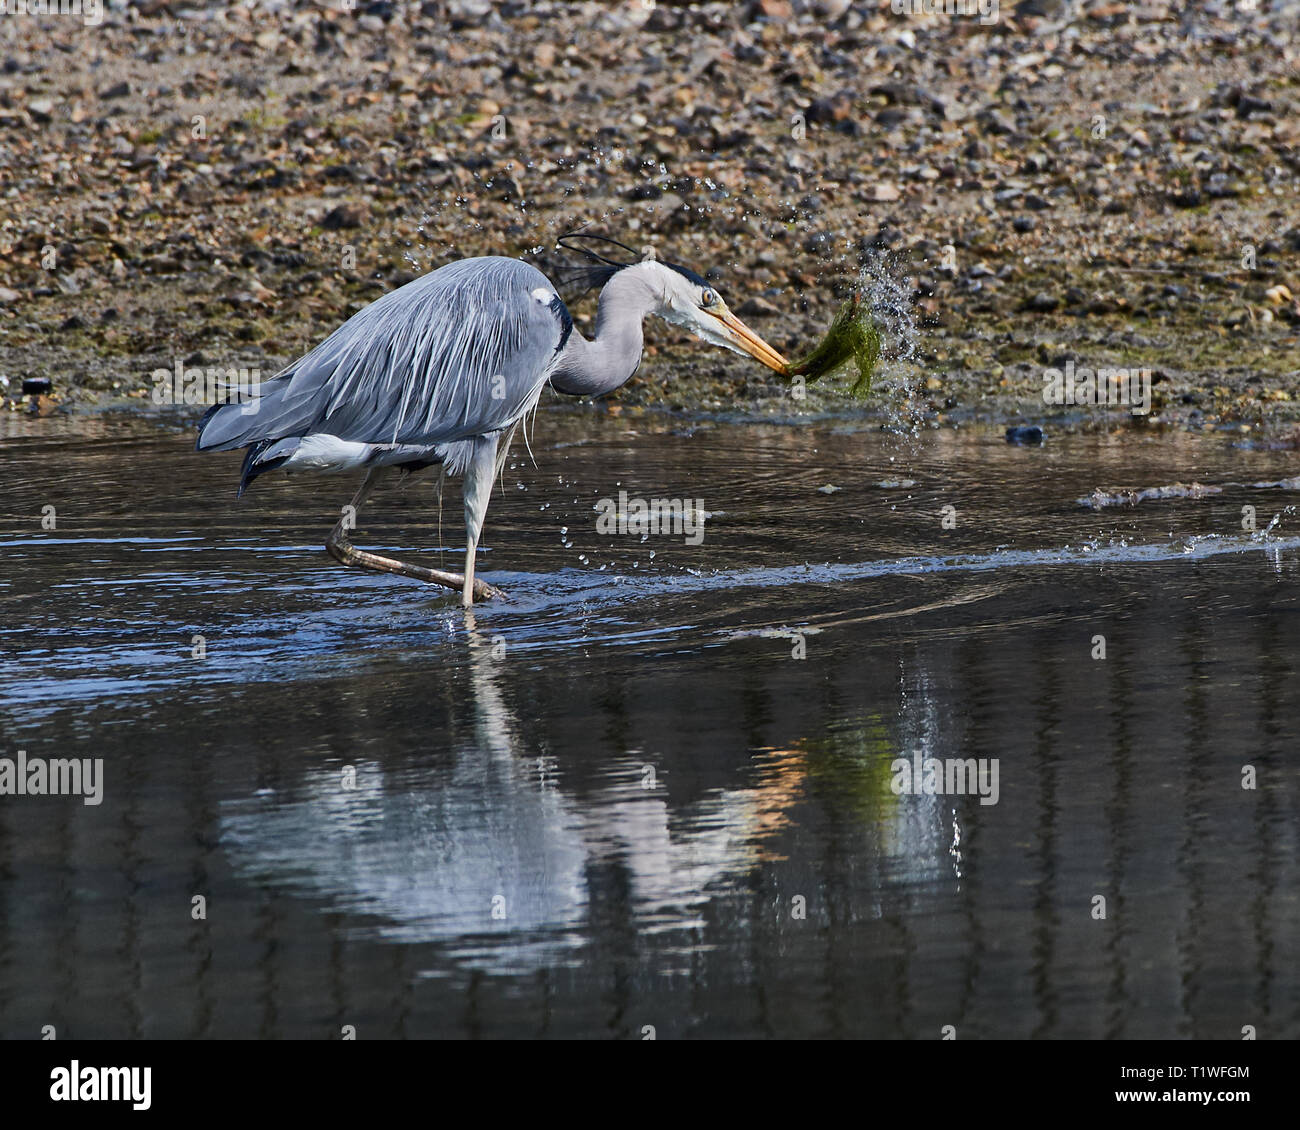 Heron catture il worm. Immagine di azione dell'uccello che separa le alghe dalla sua preda. Riflesso nel estuario ancora l'acqua. Foto Stock